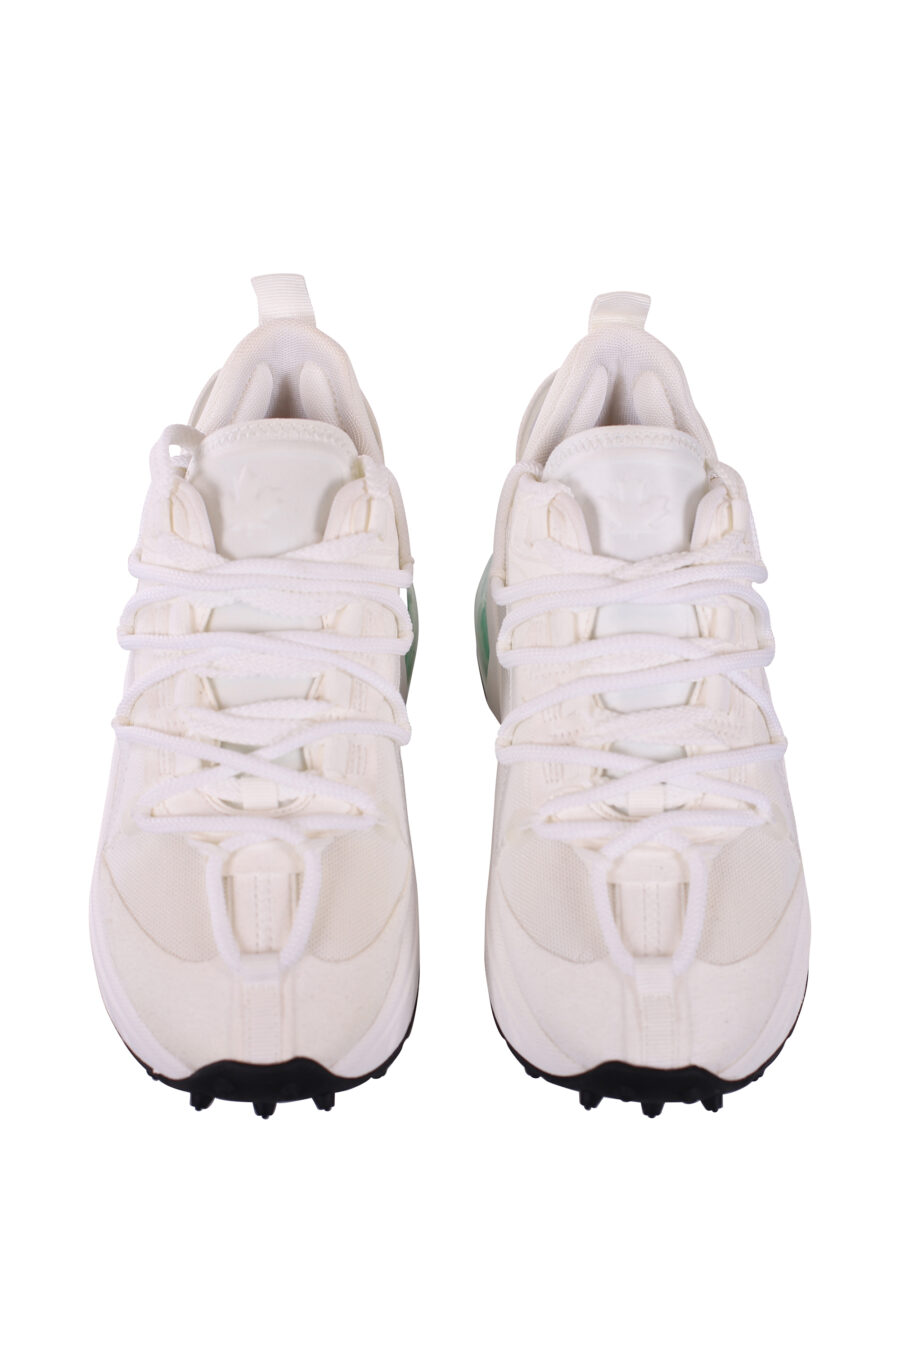 Zapatillas blancas con camara de aire verde - IMG 5690